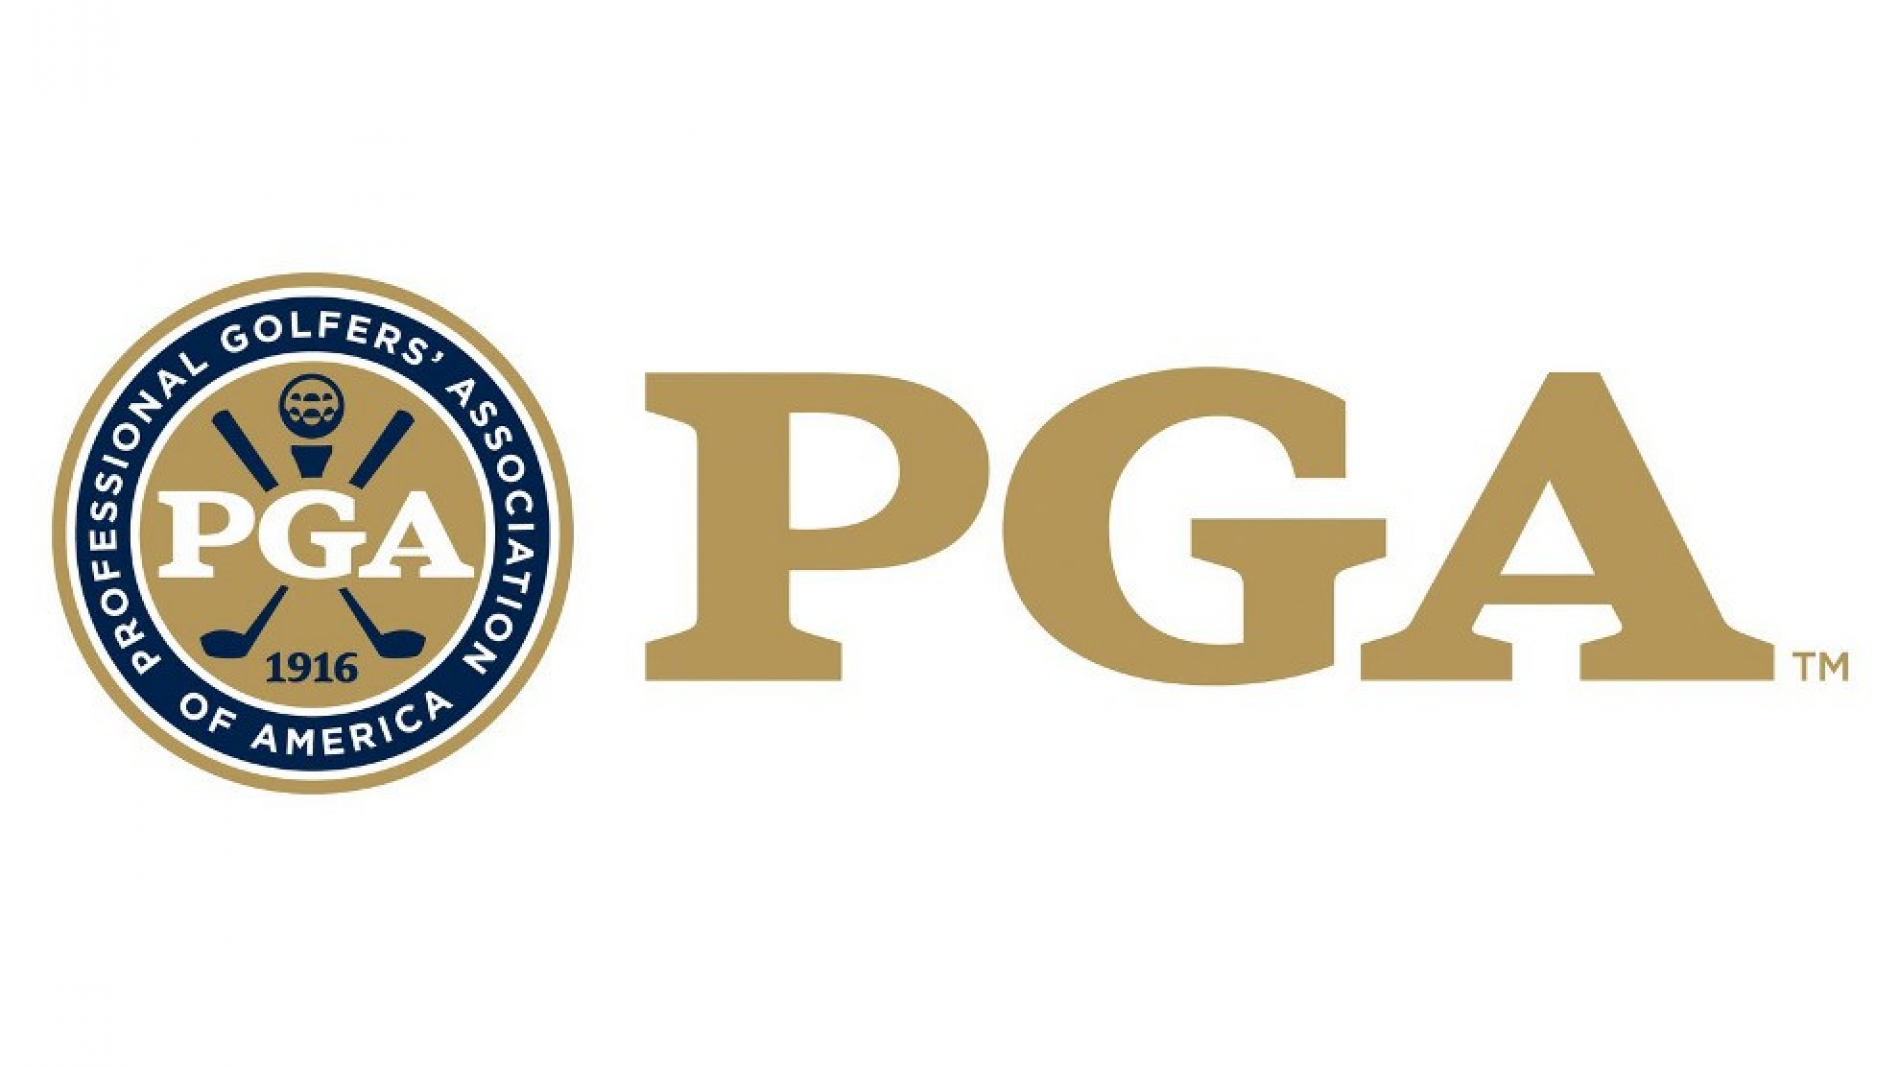 John Deere Named Official Turf Equipment Provider of the PGA of America